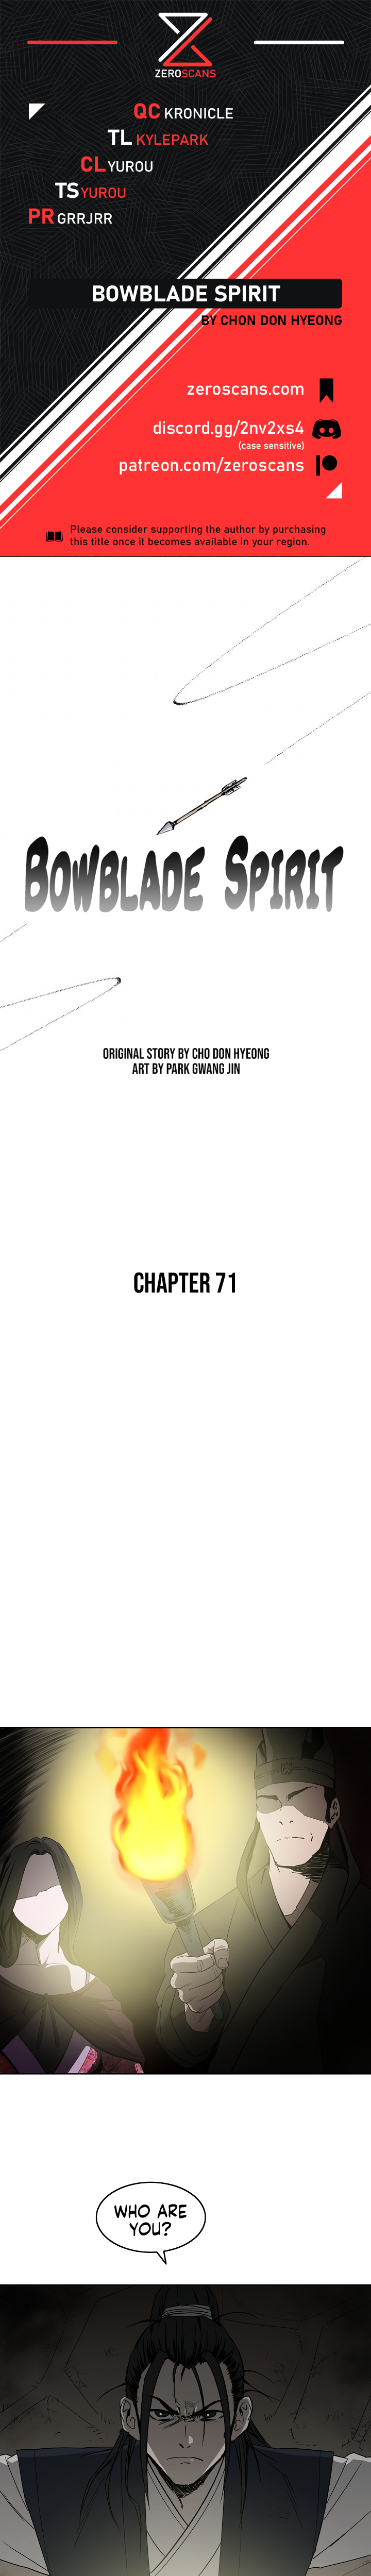 Bowblade Spirit - Chapter 6888 - Image 1